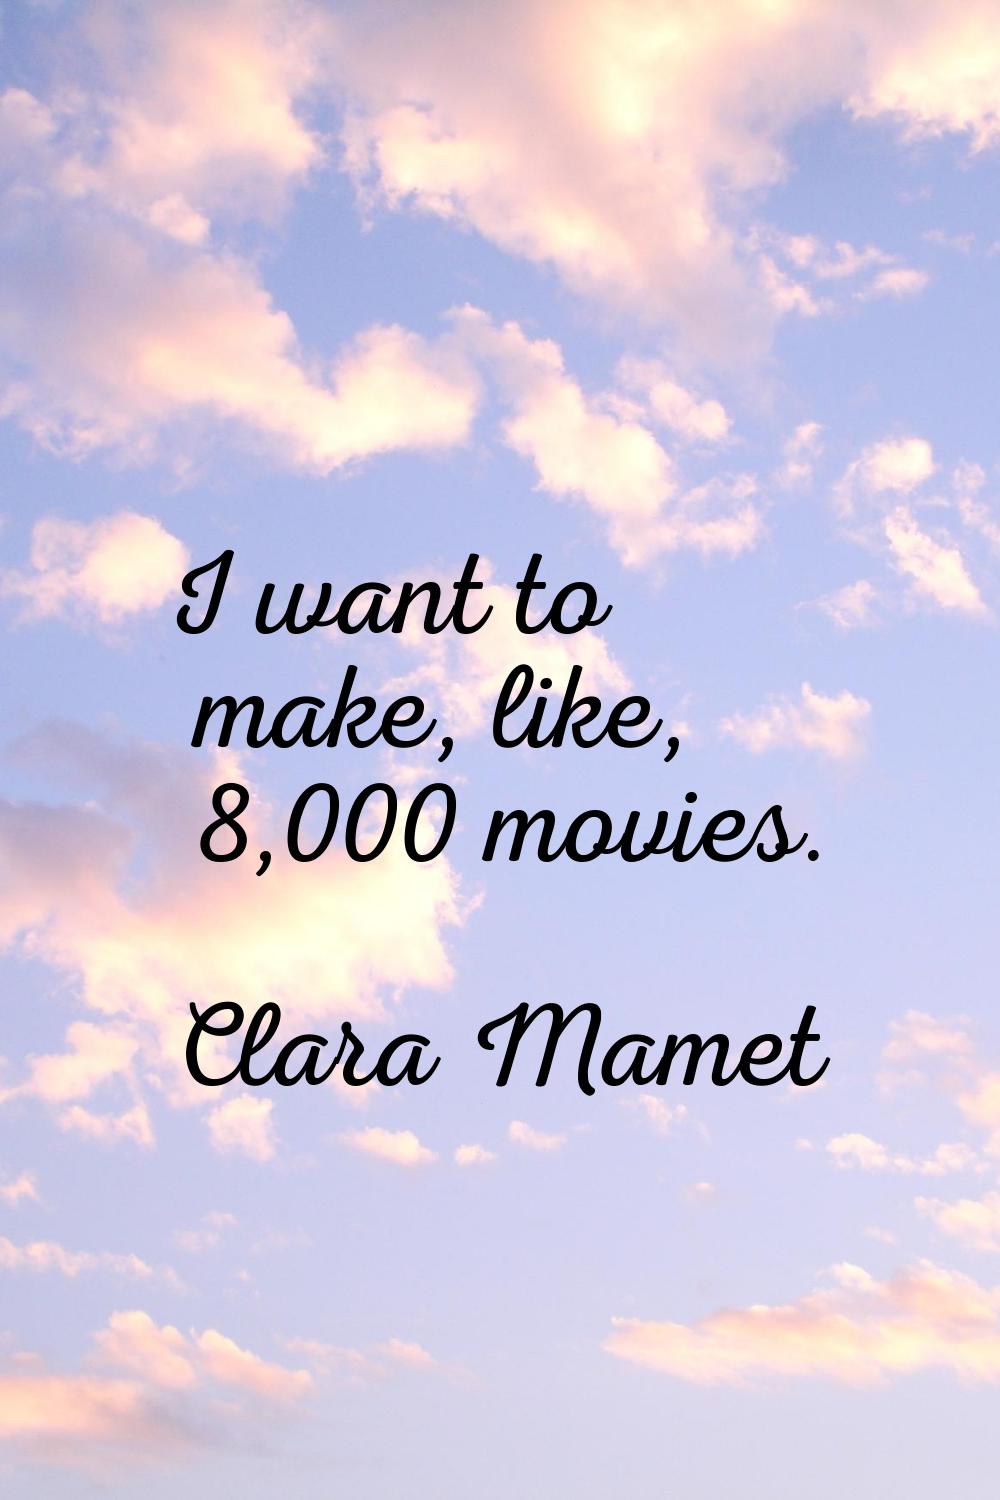 I want to make, like, 8,000 movies.